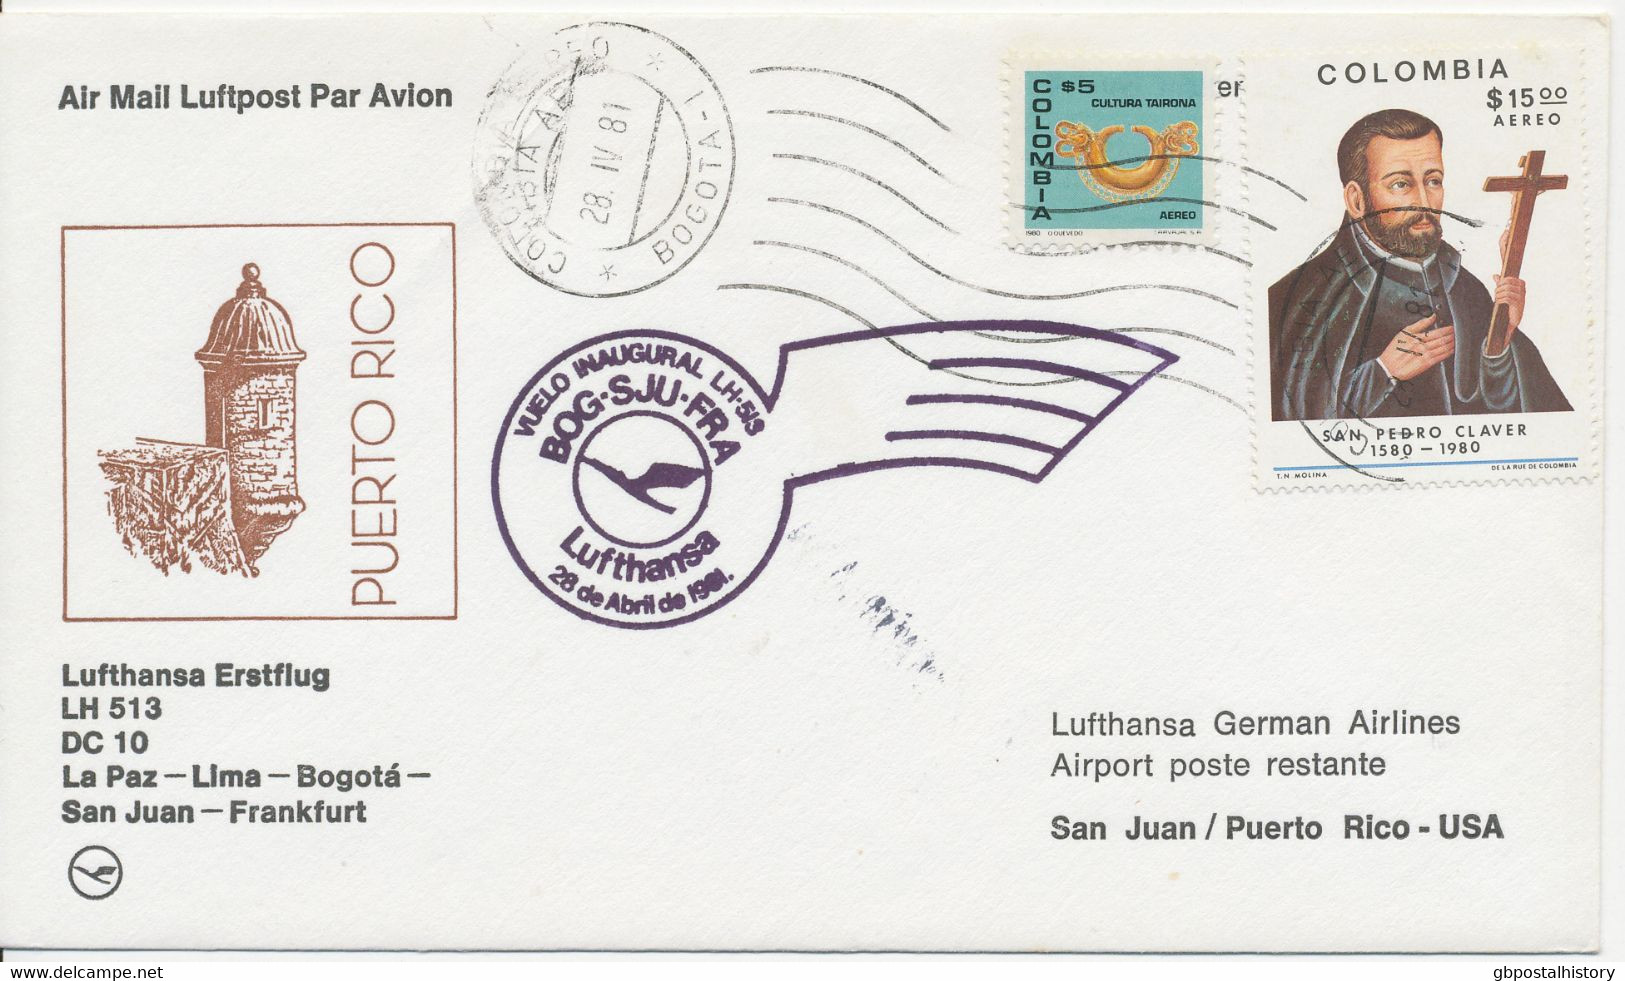 KOLUMBIEN 1981 Kab.-Erstflug Der Deutsche Lufthansa M. DC 10 Flug LH 512 "BOGOTA - LA PAZ, Bolivien" (Hab.2472/Sie.1339) - Colombia